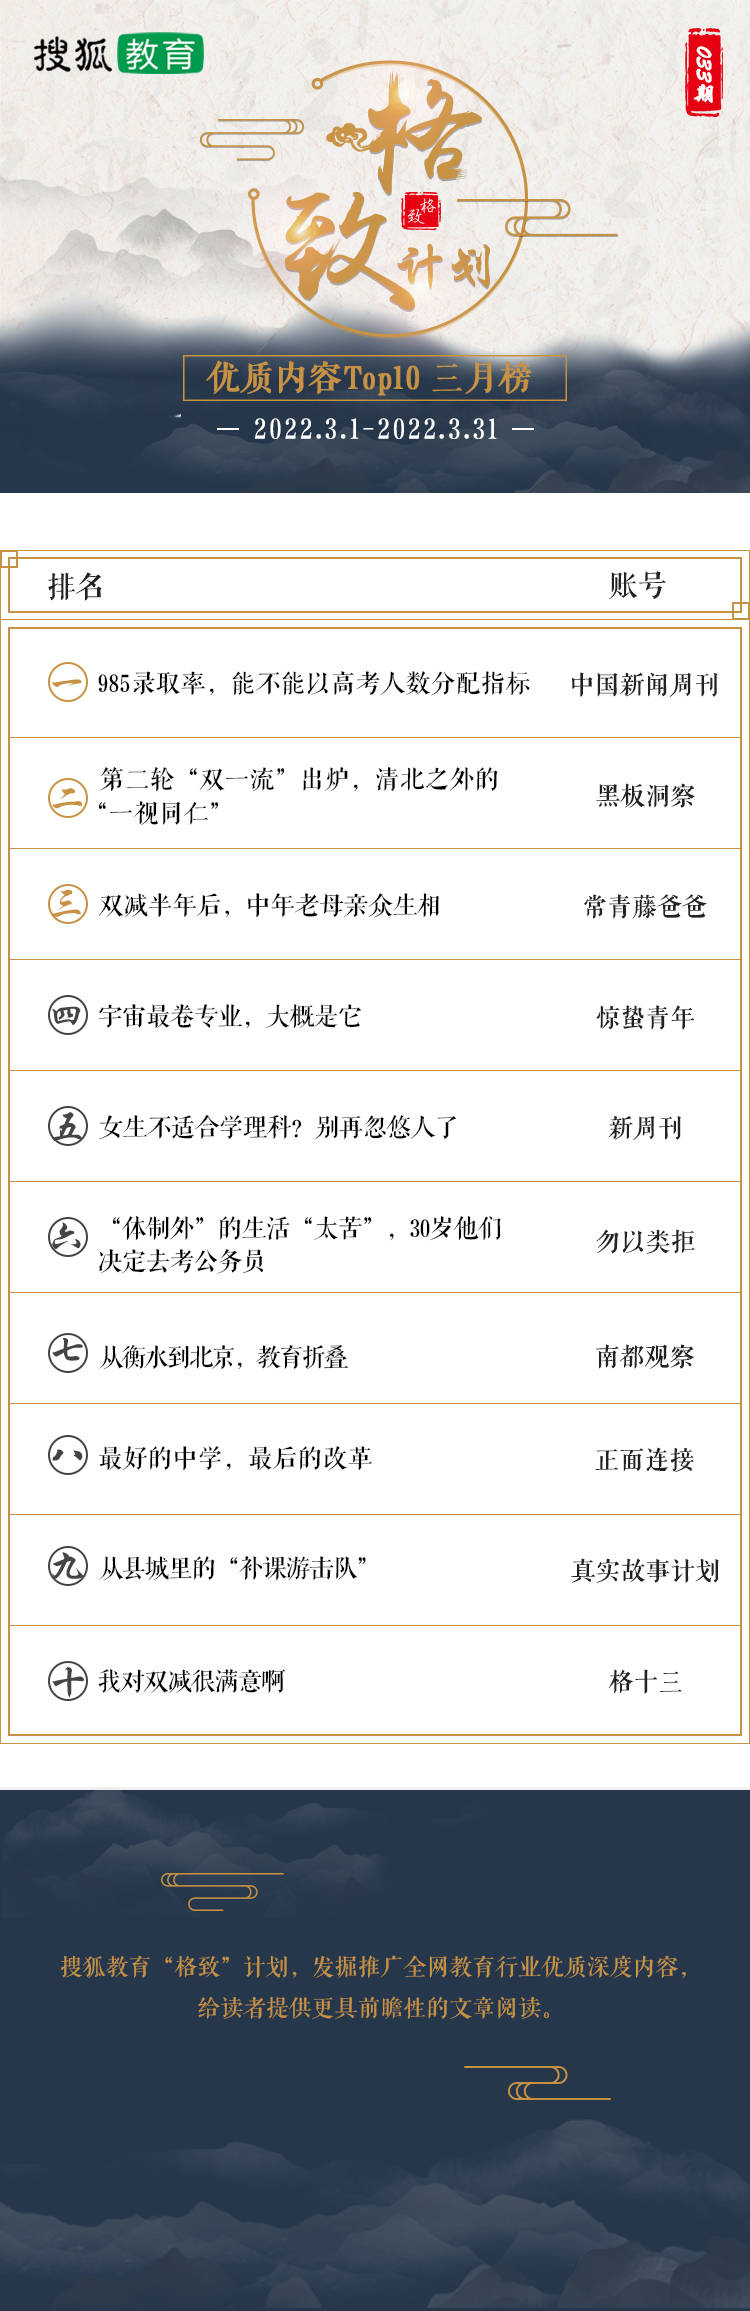 3月热文前10榜单发布 | 搜狐教育格致计划3月内容Top10